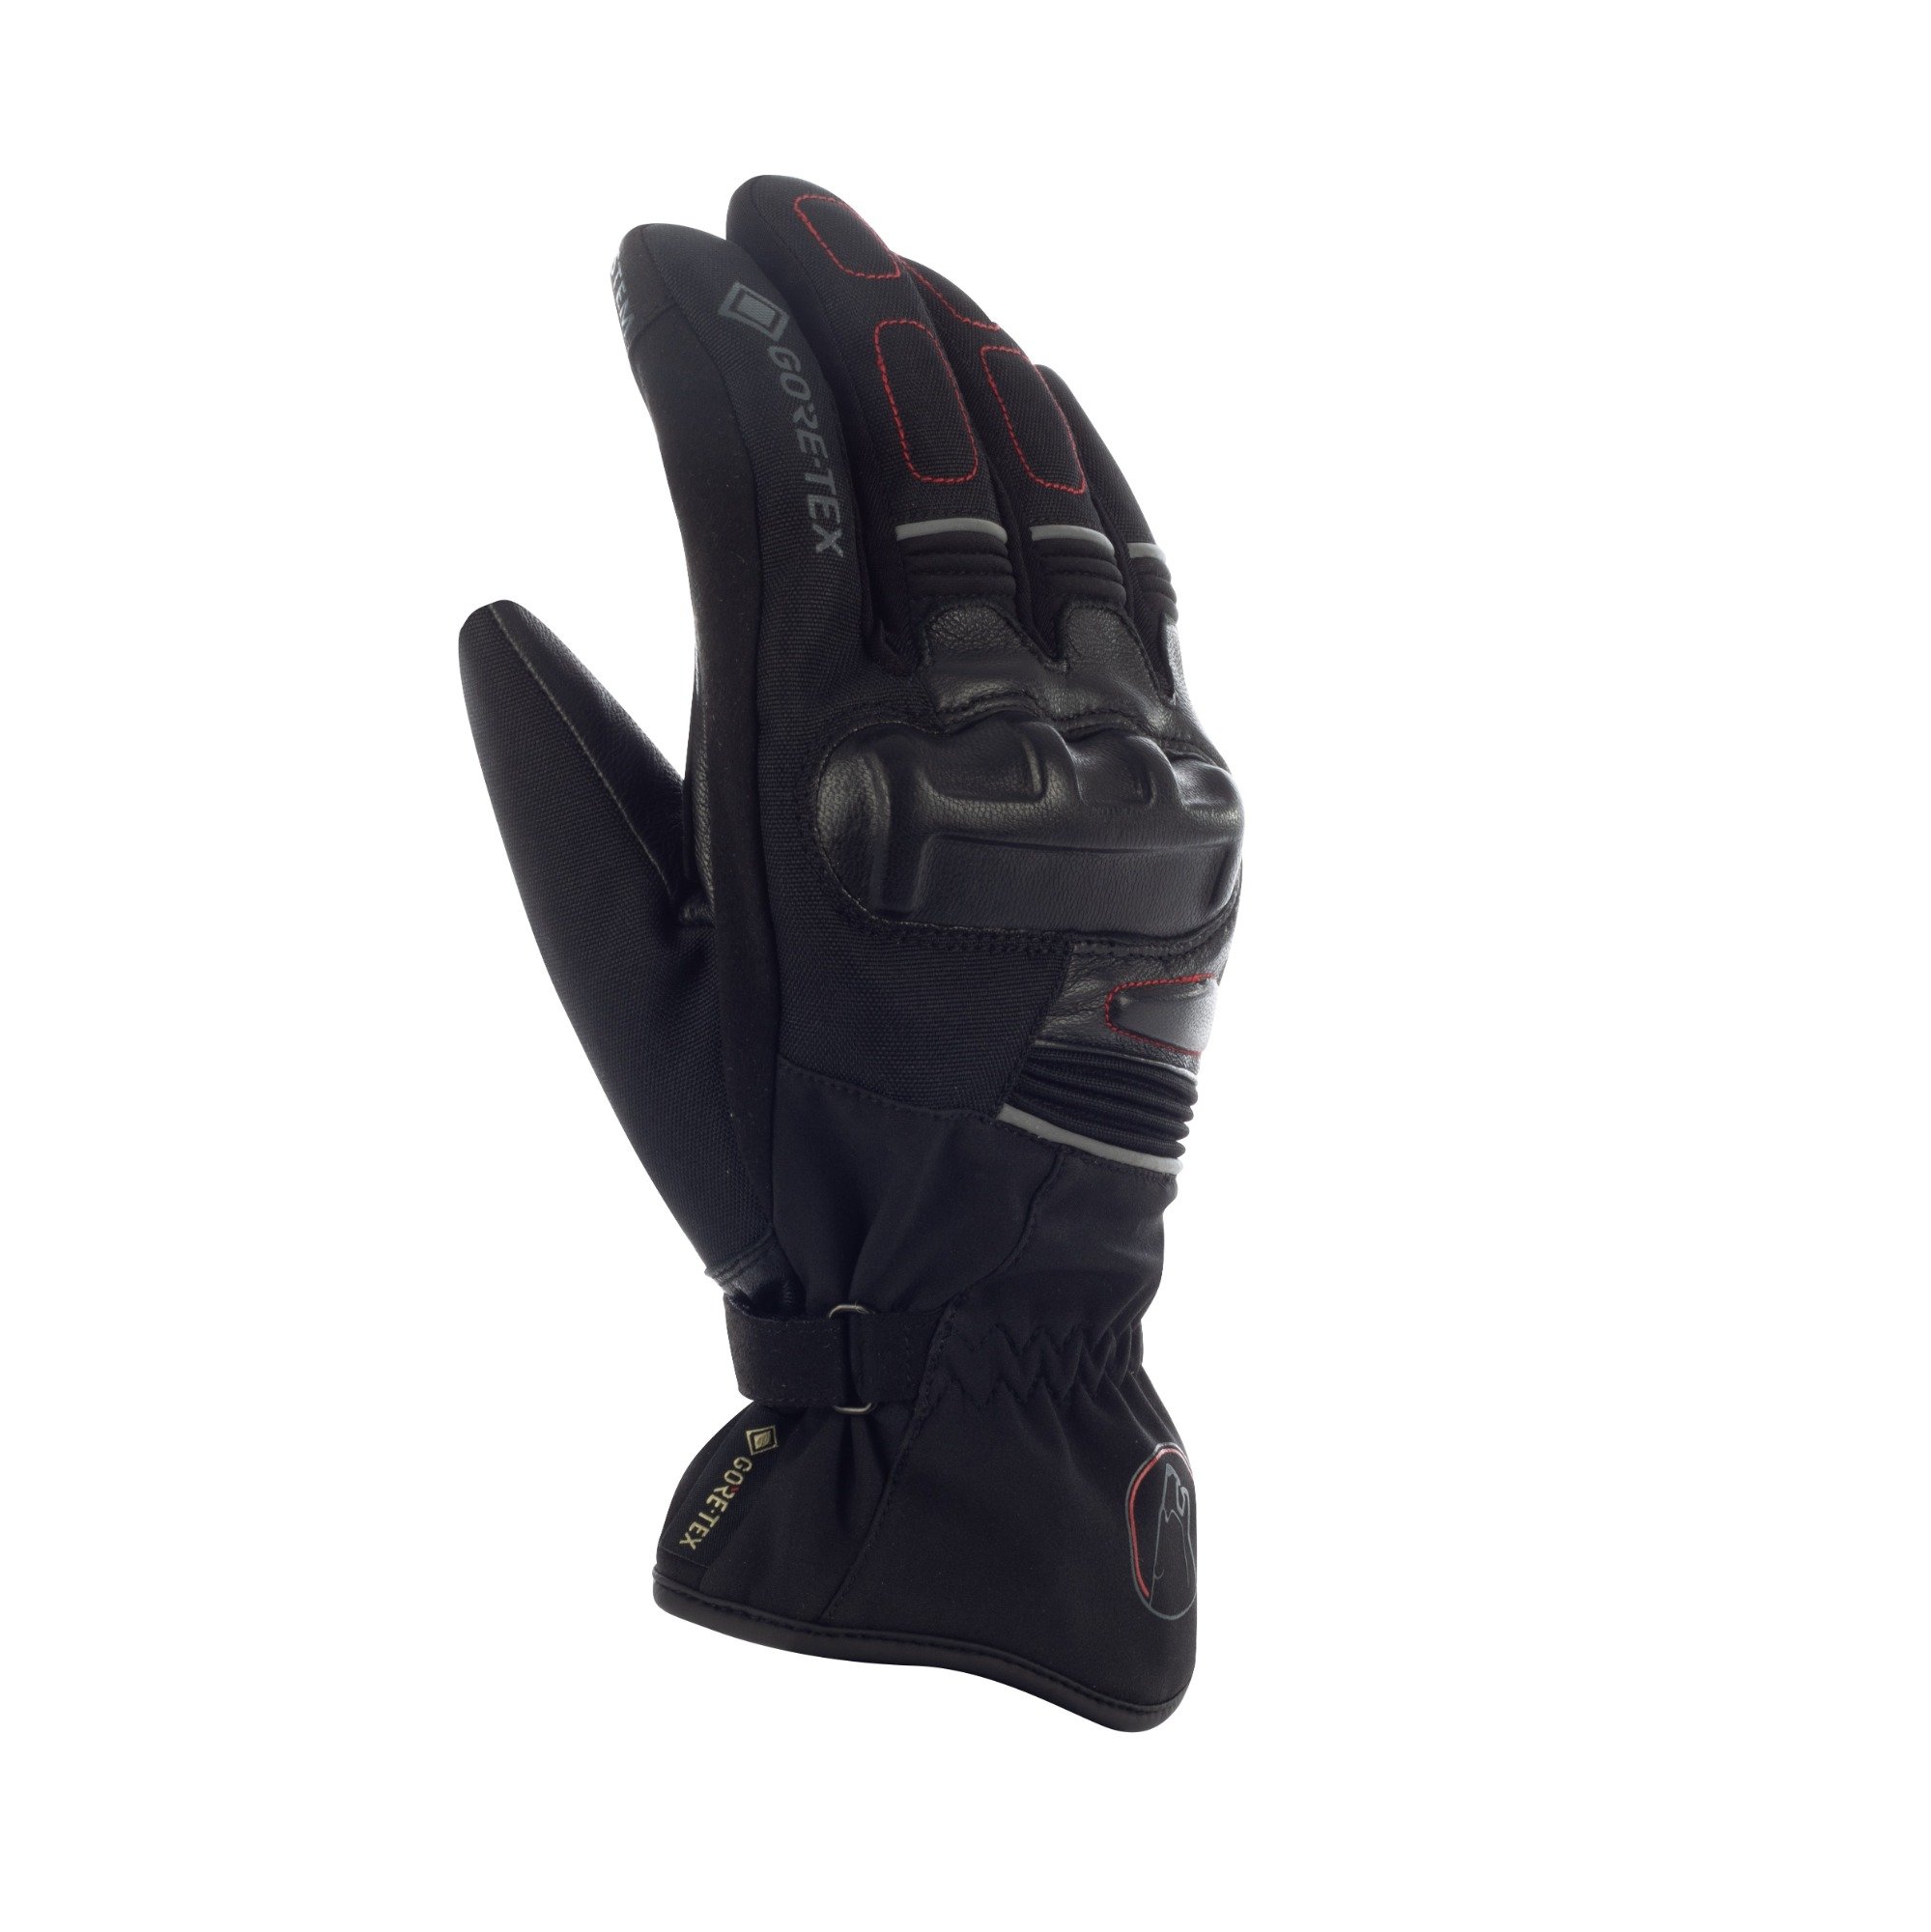 Image of Bering Punch GTX Gloves Black Size T11 EN